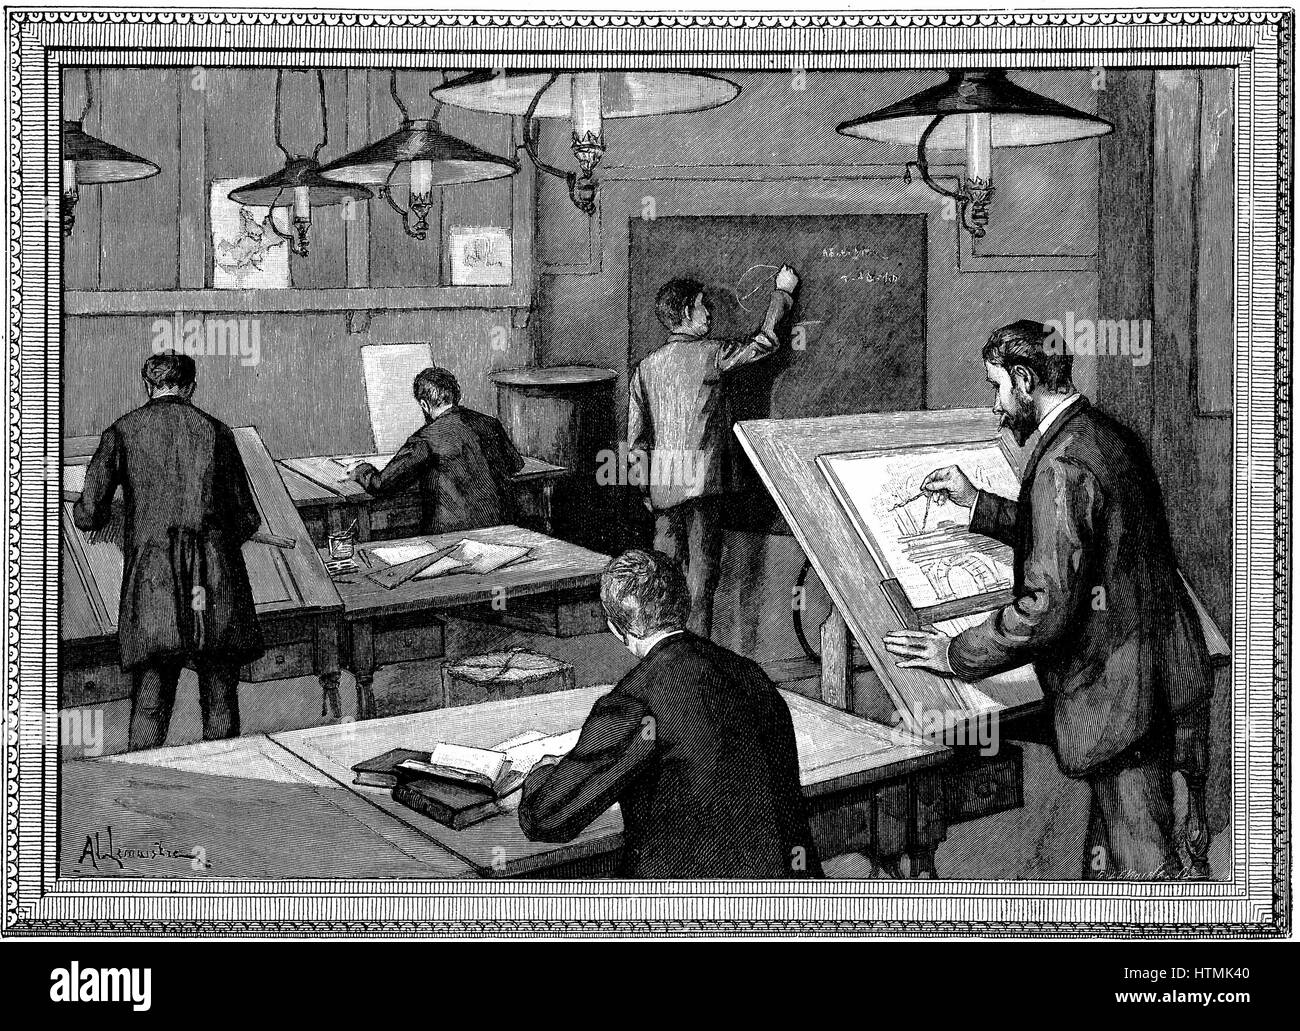 Ecole des Ponts-et-Chaussees, Paris. Students at their studies. Wood engraving, Paris, 1894 Stock Photo